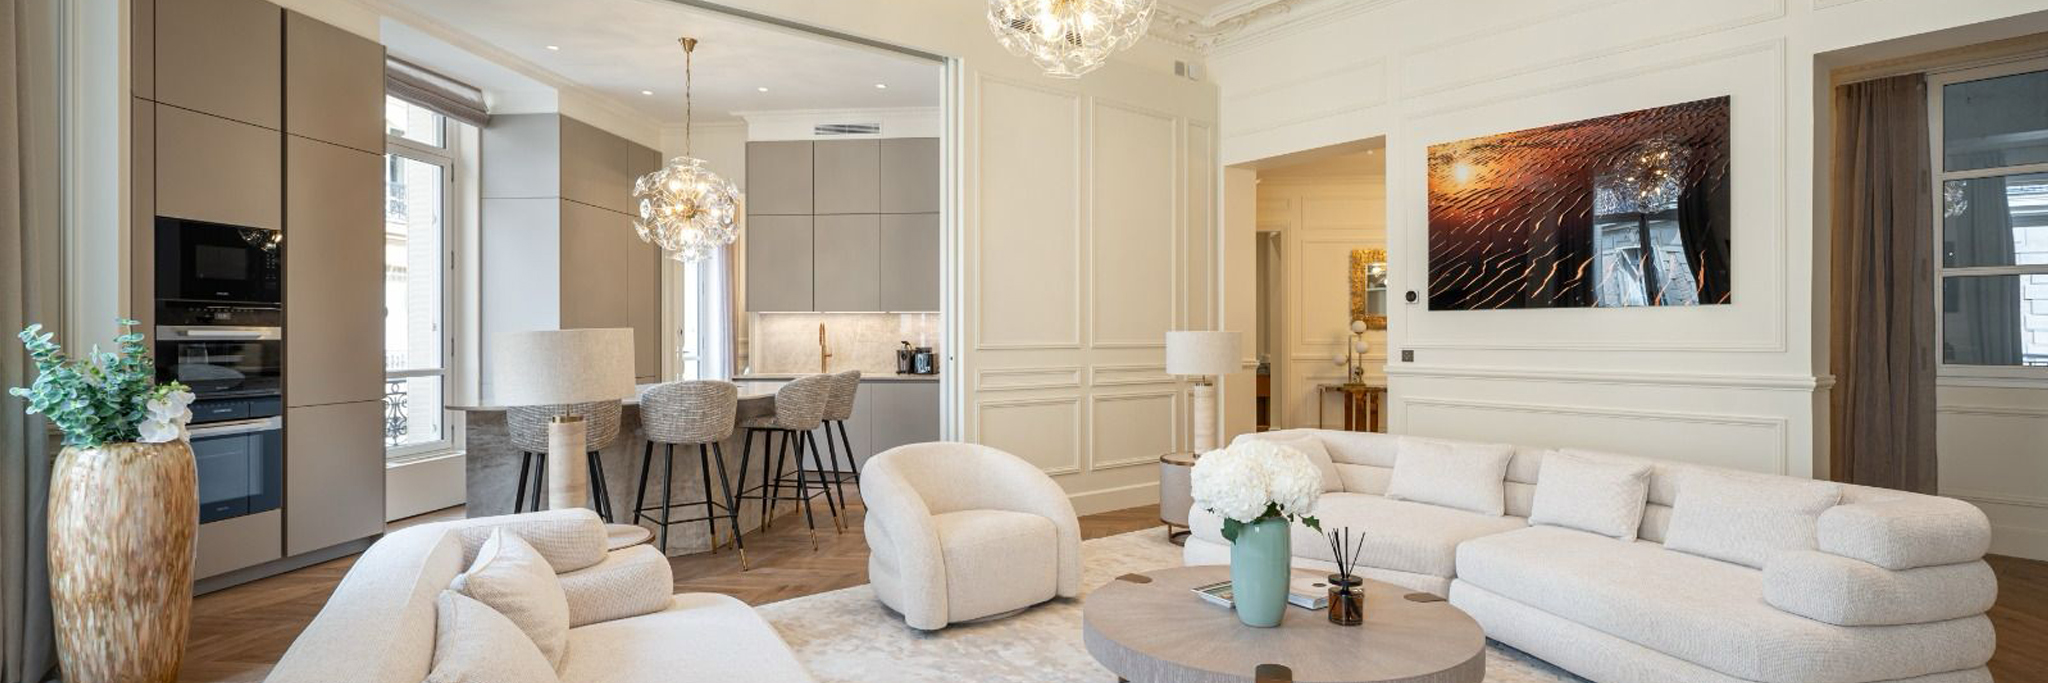 Appartement à Paris avenue Montaigne. Réalisé par le cabinet d'architecture d'intérieur Sober.